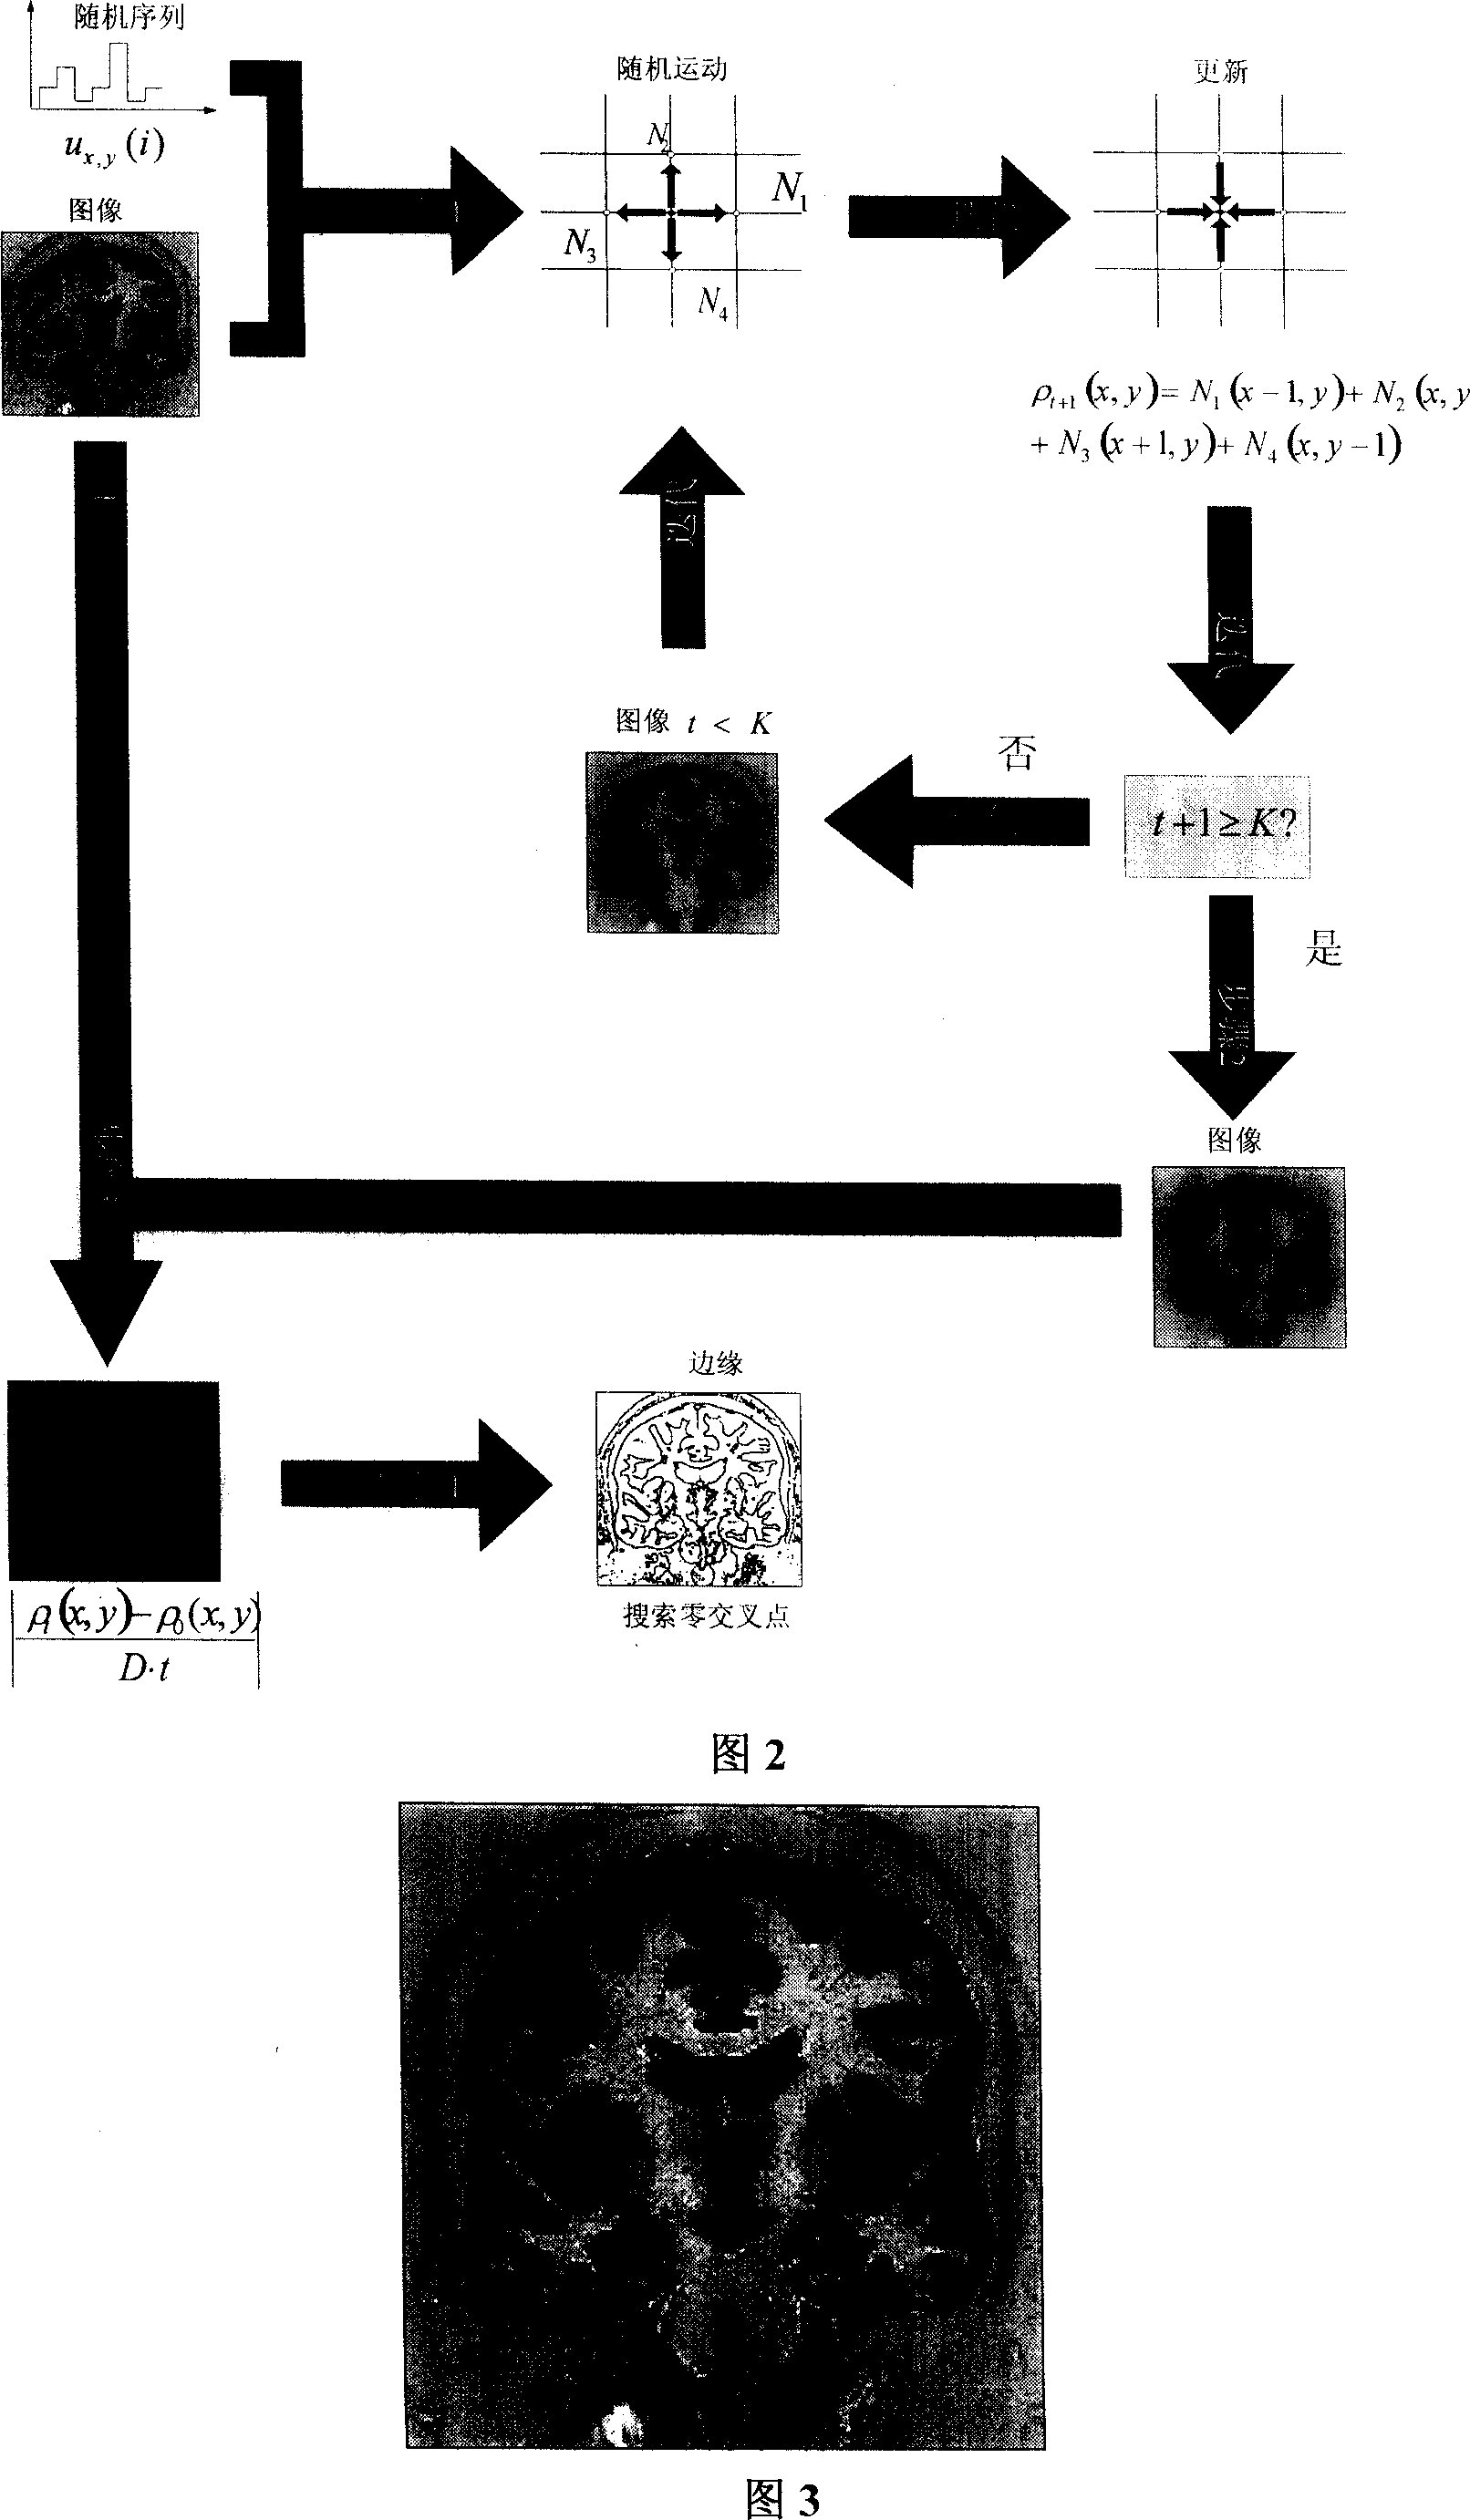 Testing algorithm of image border based on cellular automata